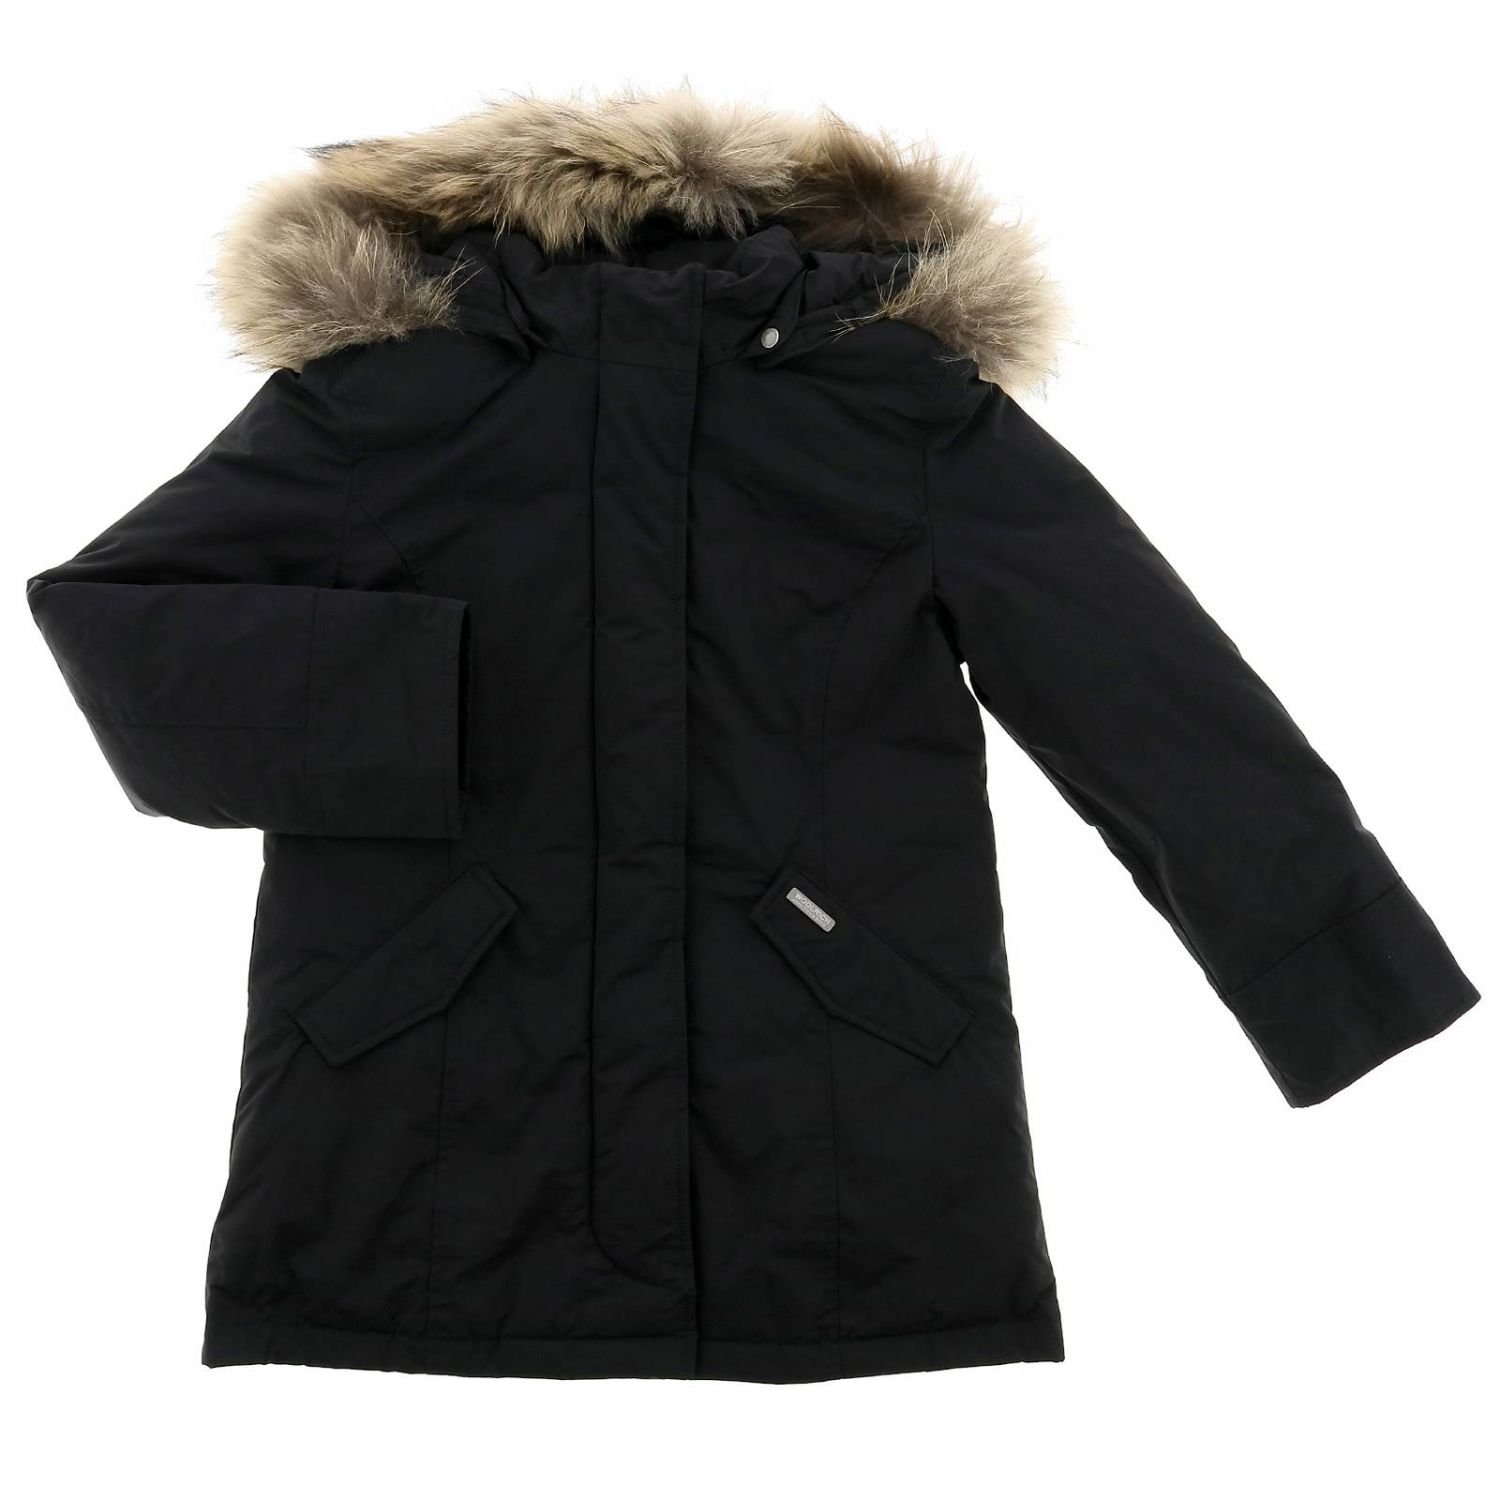 Woolrich Outlet: Jacket kids - Black | Jacket Woolrich WKCPS2043 CF40 ...